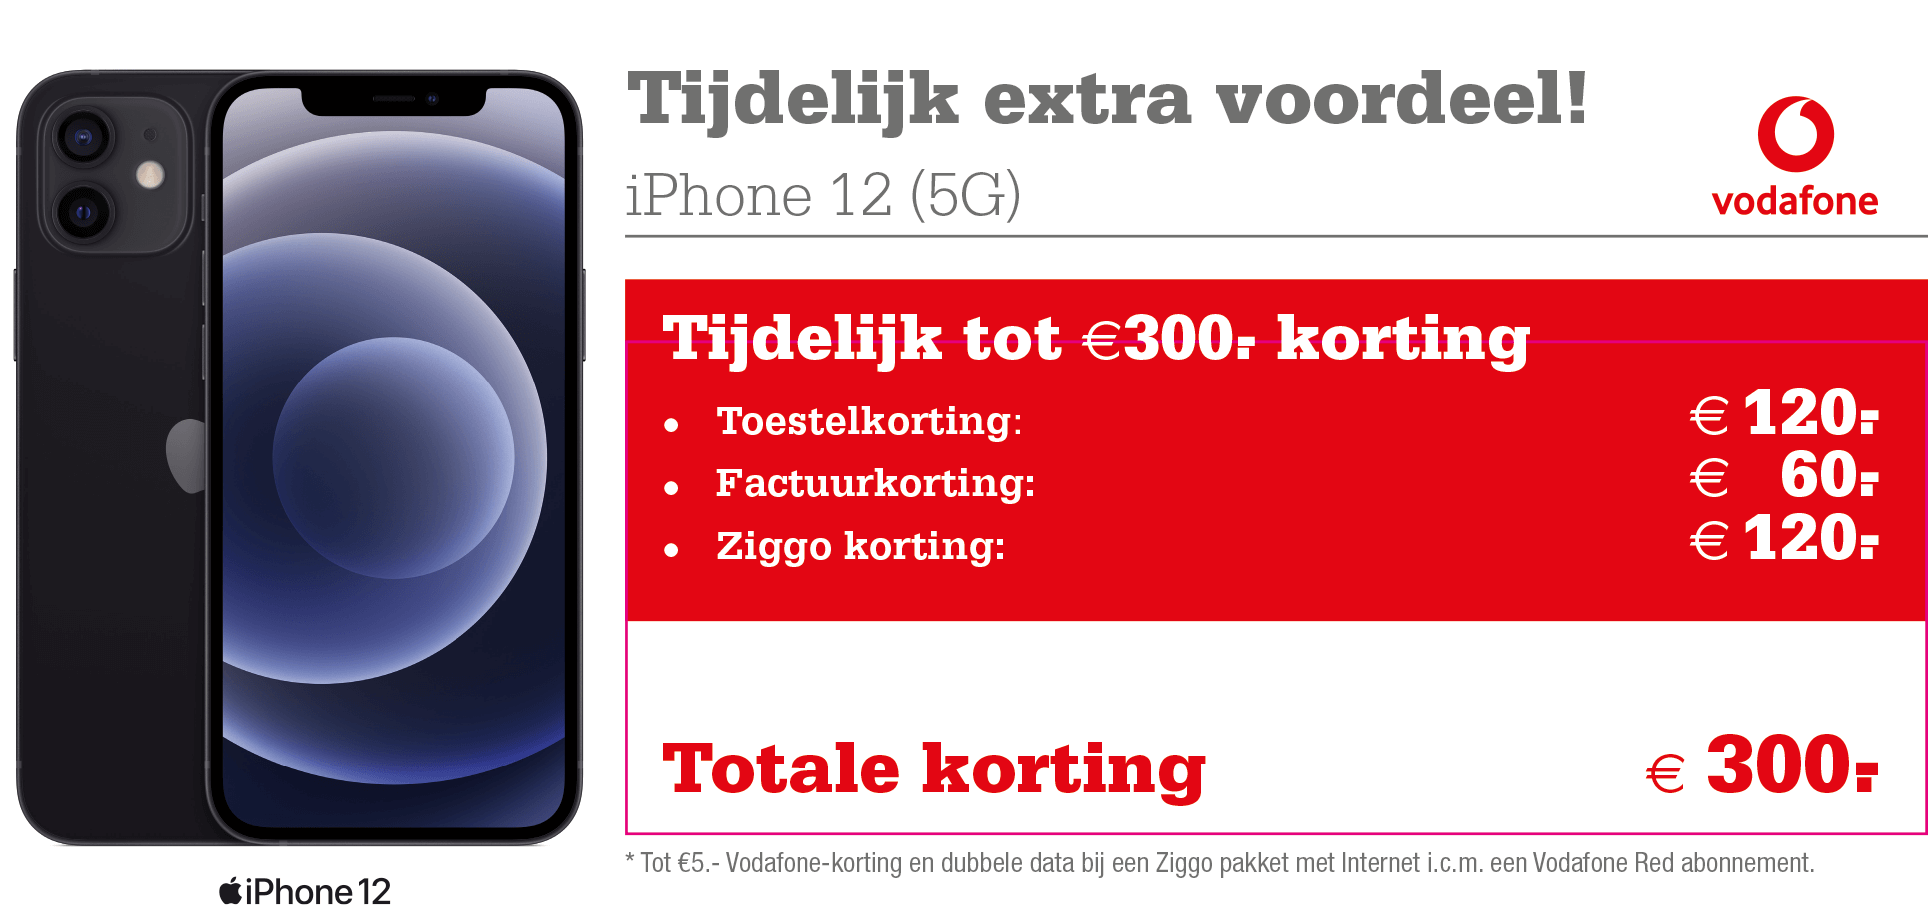 Forensische geneeskunde Attent Einde Vodafone Unlimited aanbieding: tot €300,- korting op de iPhone 12! |  Telecombinatie